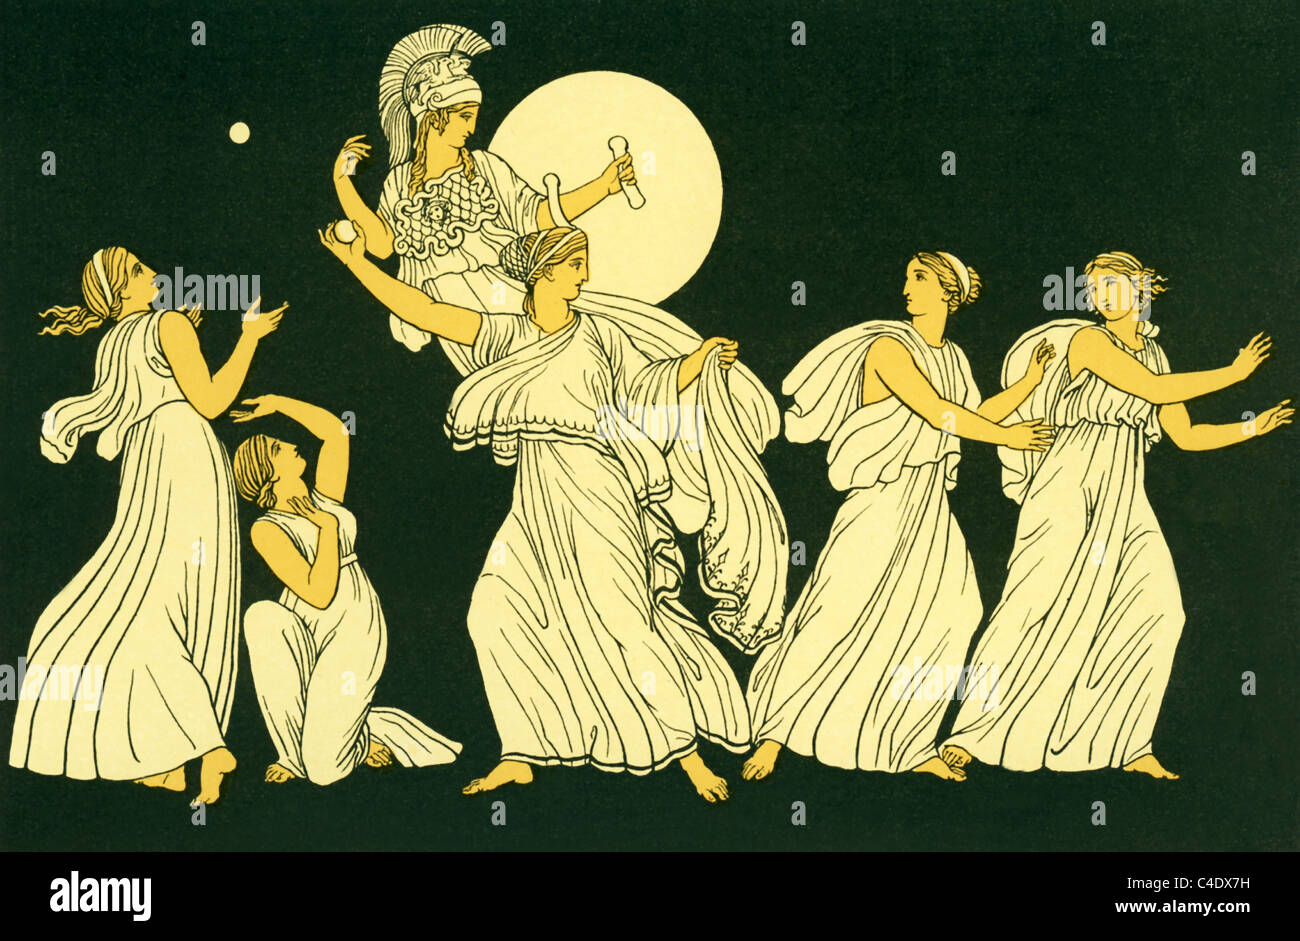 Nausikaa, Tochter des Königs der Phaiaken, hatte spielen Ball mit ihren Freunden wenn sie Schiffbrüchigen Odysseus sieht. Stockfoto